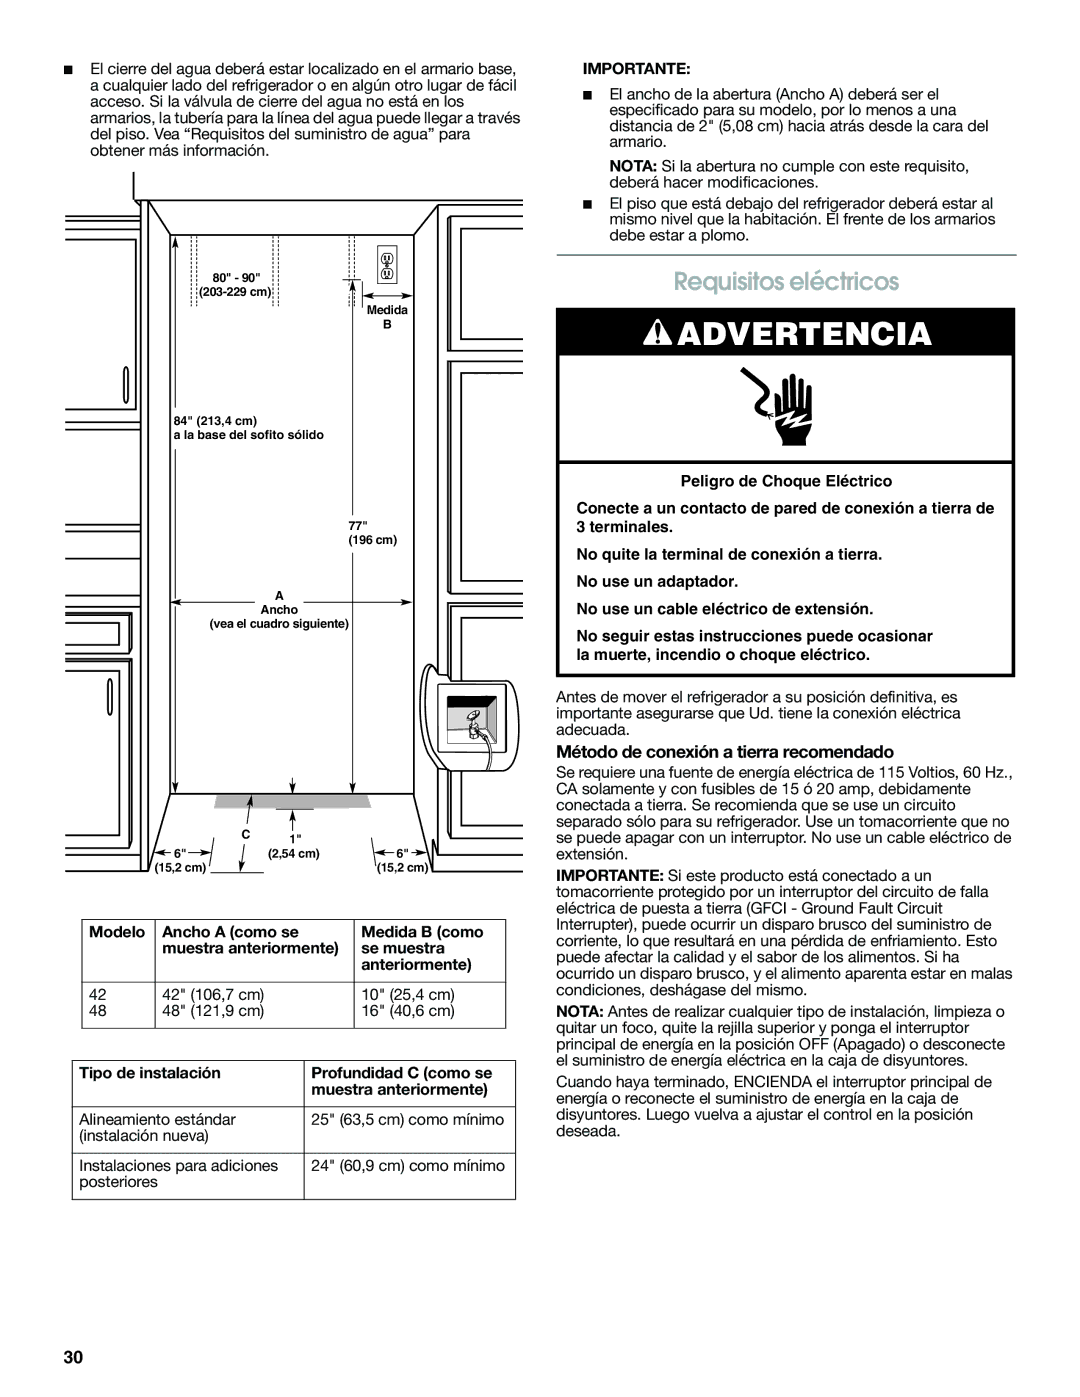 Jenn-Air W10379136A manual Requisitos eléctricos, Método de conexión a tierra recomendado 